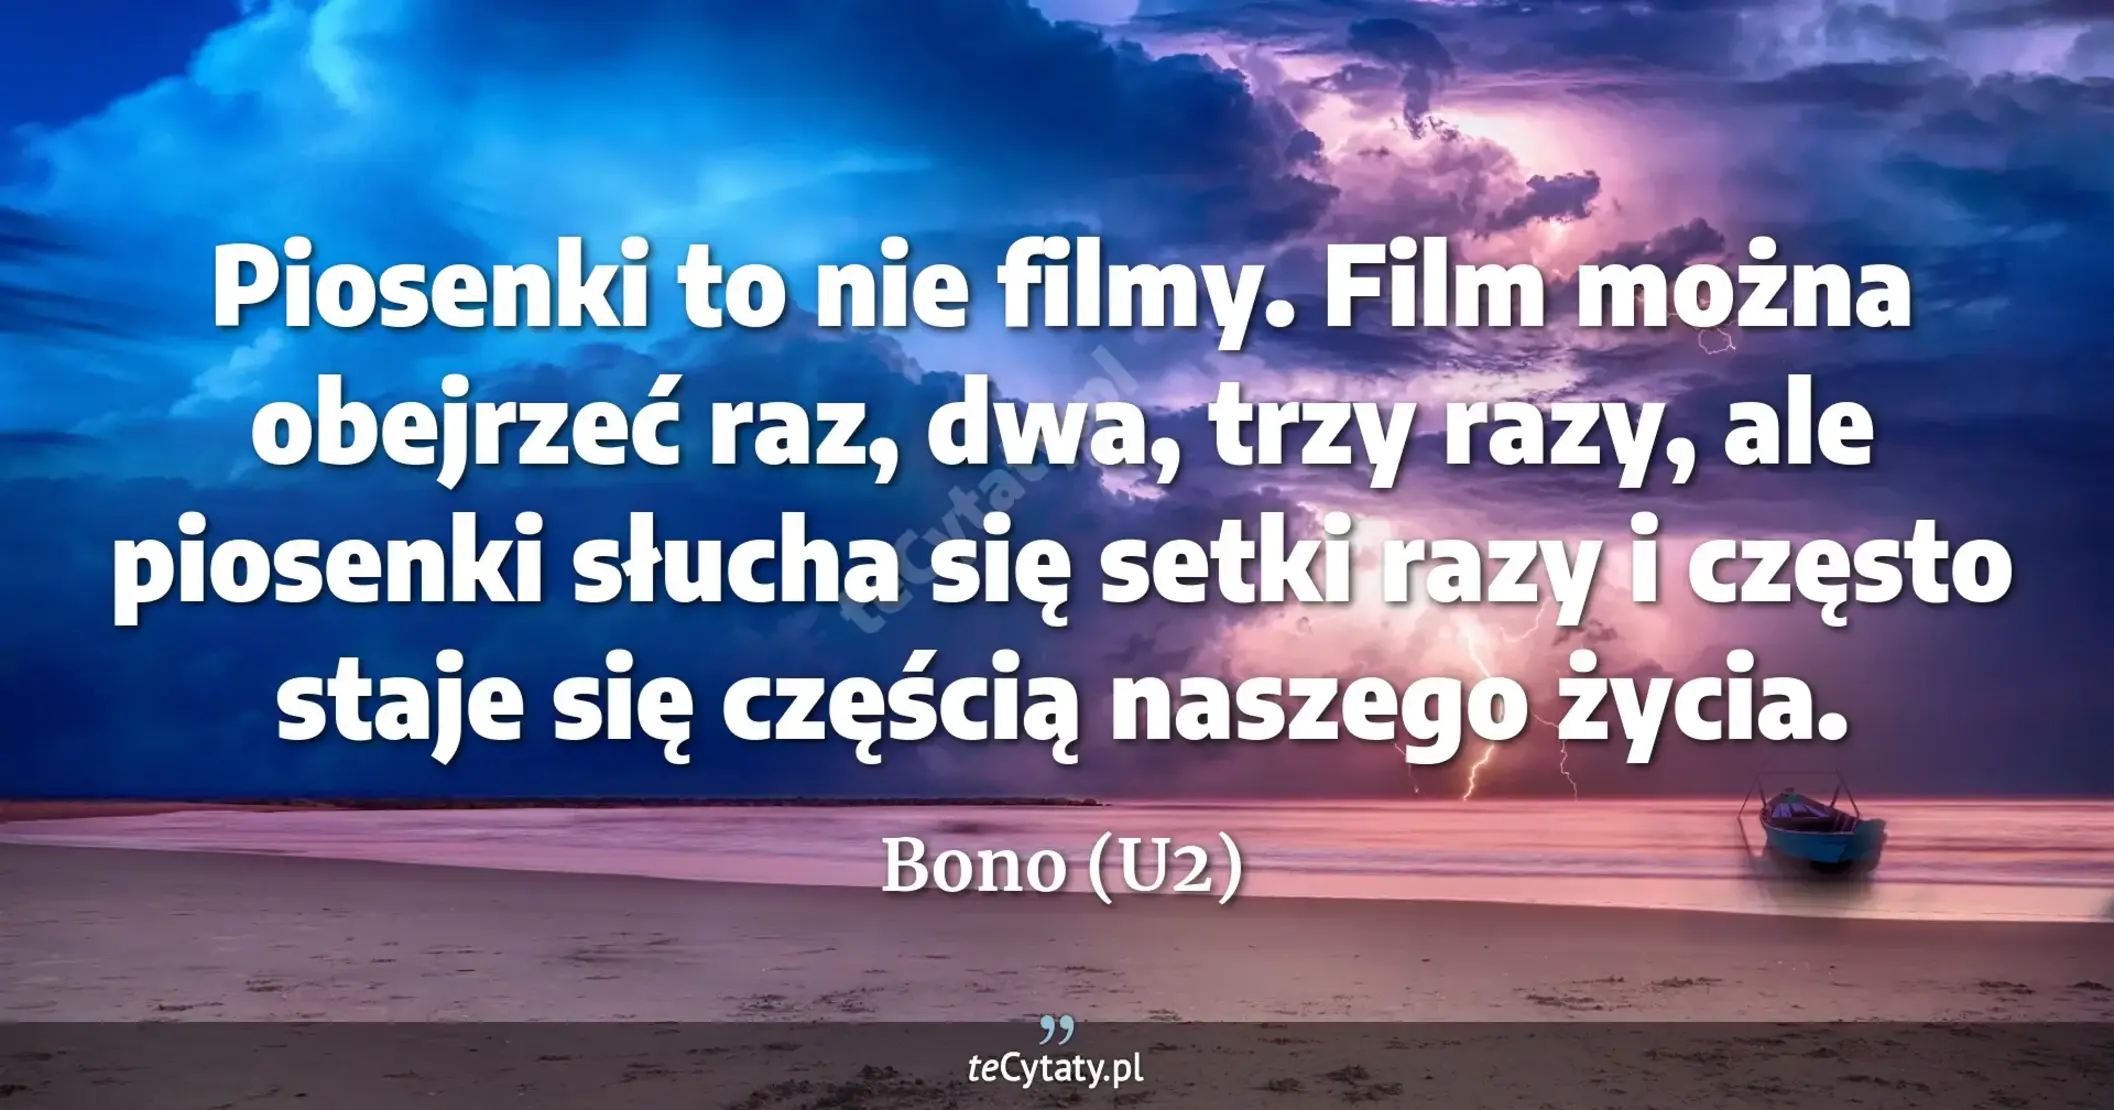 Piosenki to nie filmy. Film można obejrzeć raz, dwa, trzy razy, ale piosenki słucha się setki razy i często staje się częścią naszego życia. - Bono (U2)